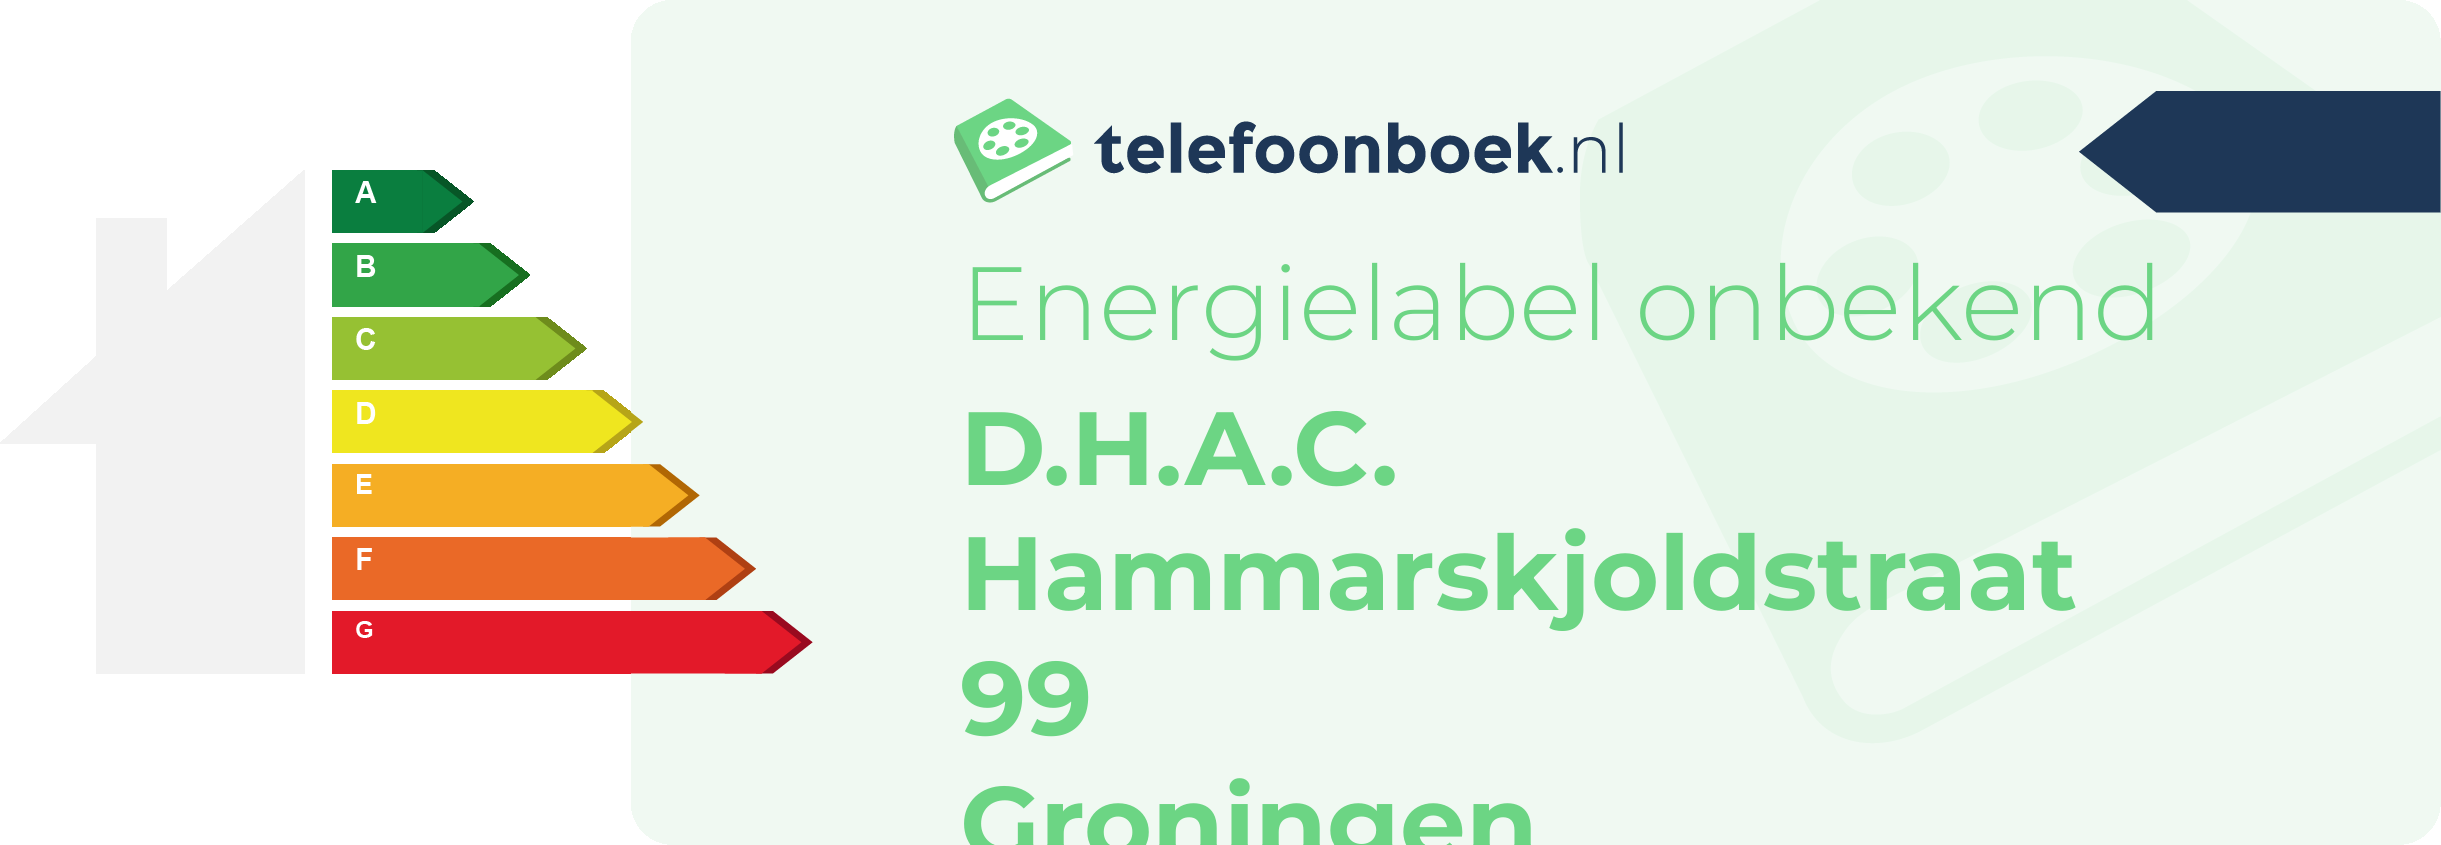 Energielabel D.H.A.C. Hammarskjoldstraat 99 Groningen